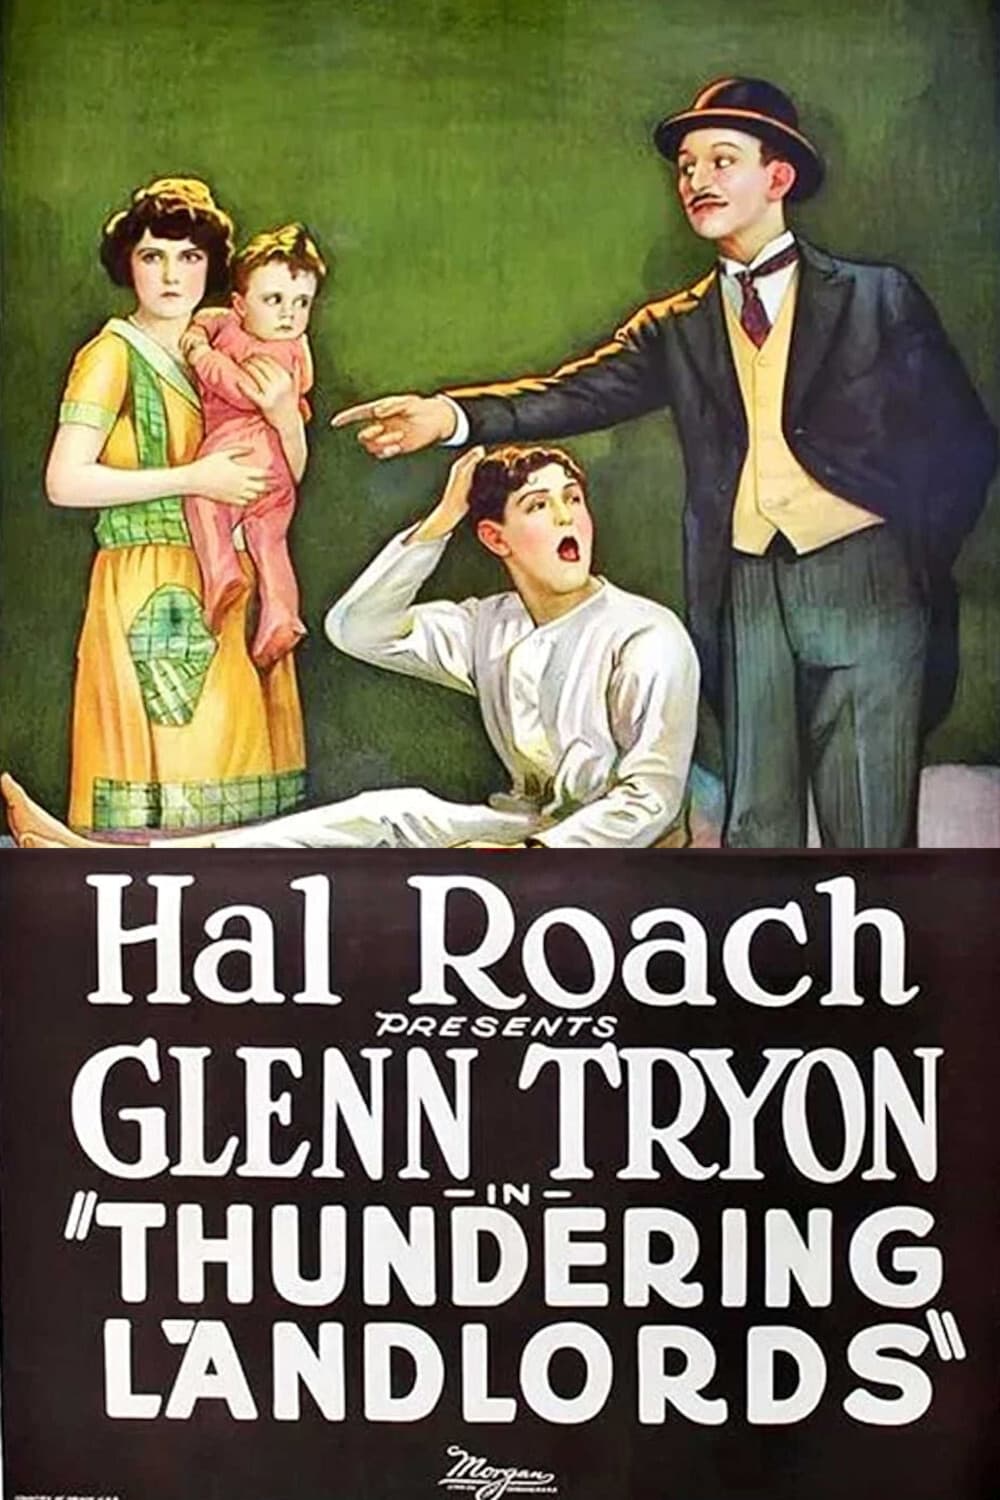 Thundering Landlords (1925)